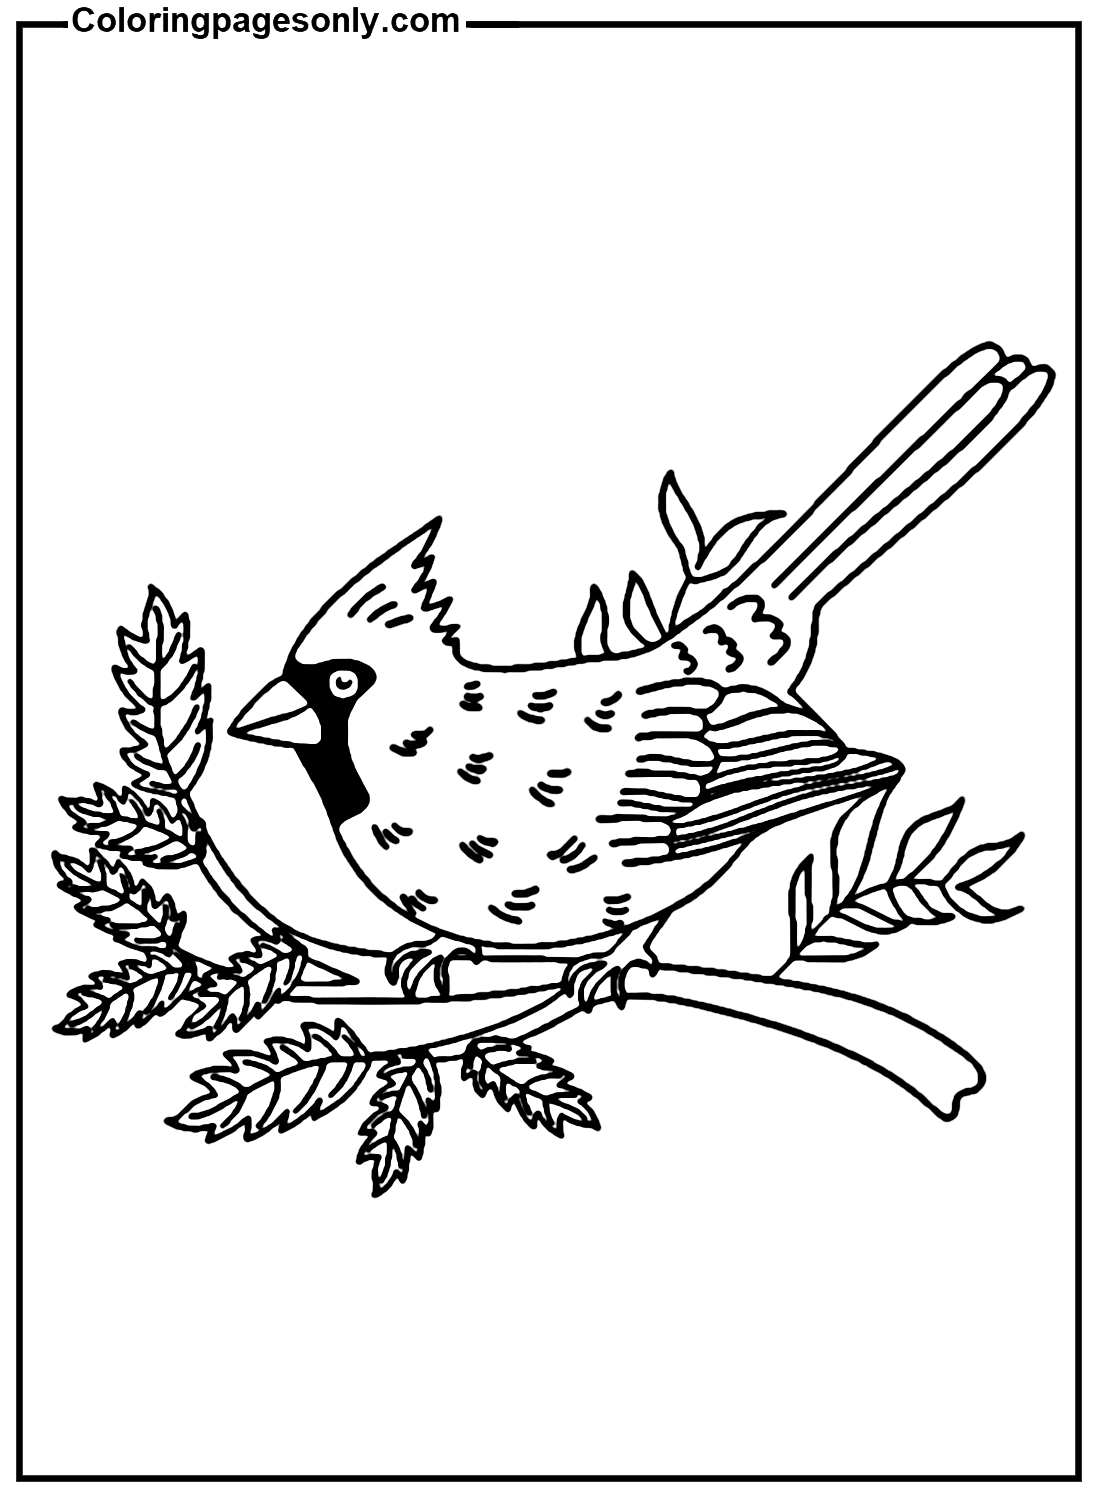 Cardinal Bird Image Coloring Page